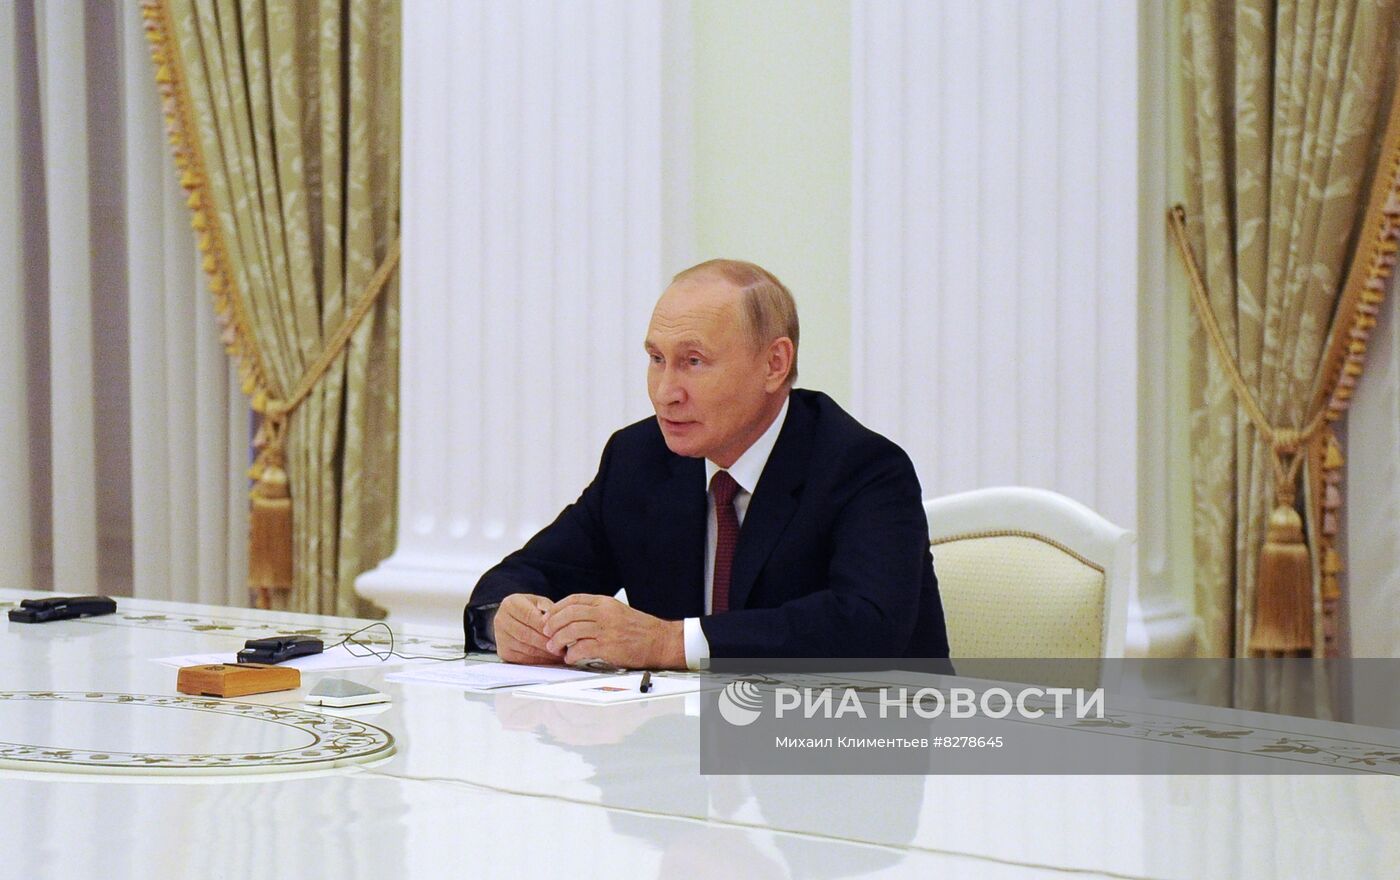 Президент РФ В. Путин встретился с членом президиума БиГ М. Додиком